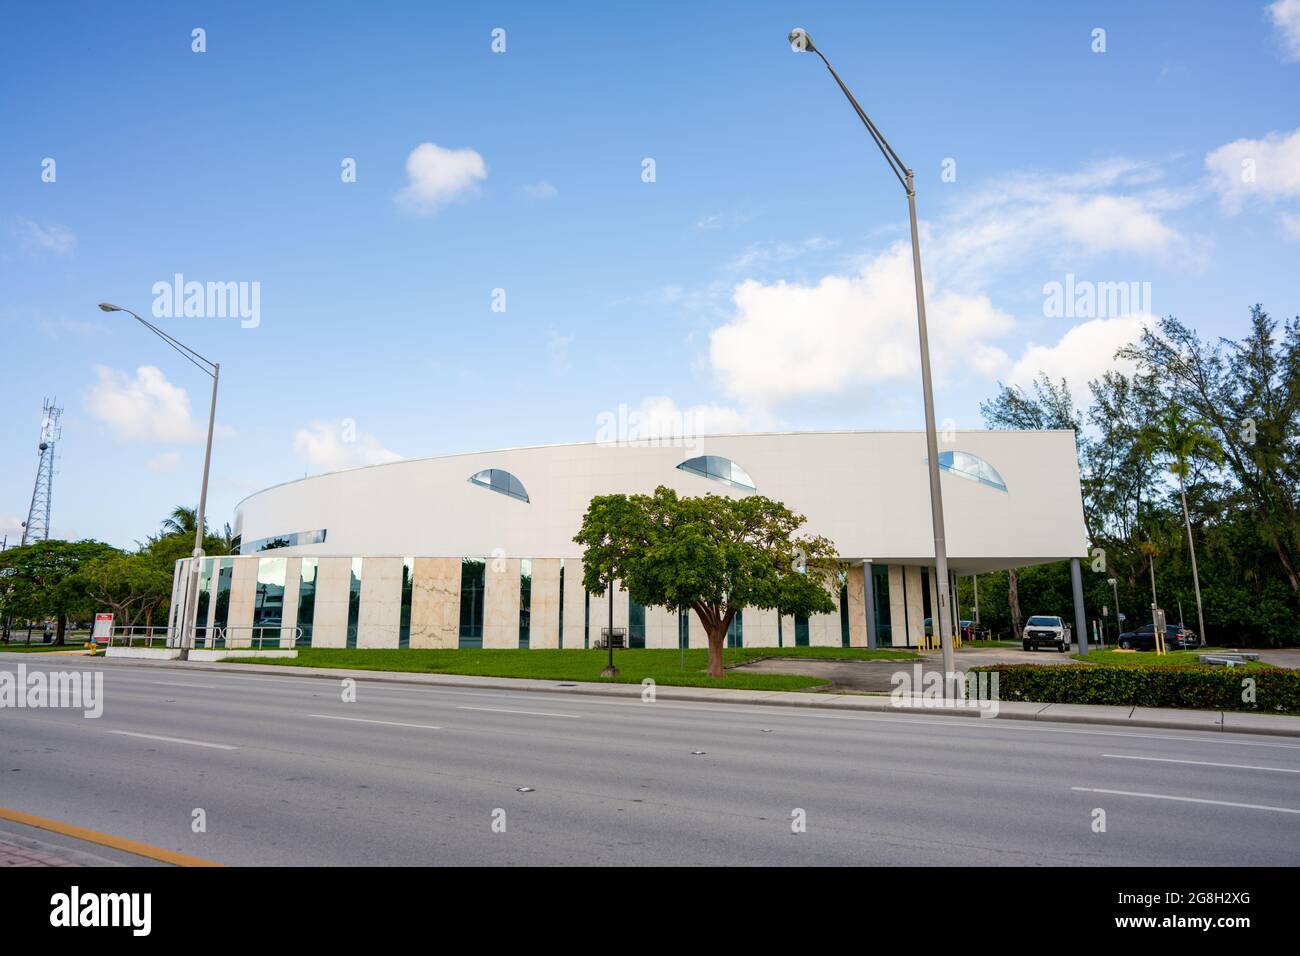 Miami, FL, USA - July 16, 2021: Photo of the North Dade Justice Center Miami FL Stock Photo